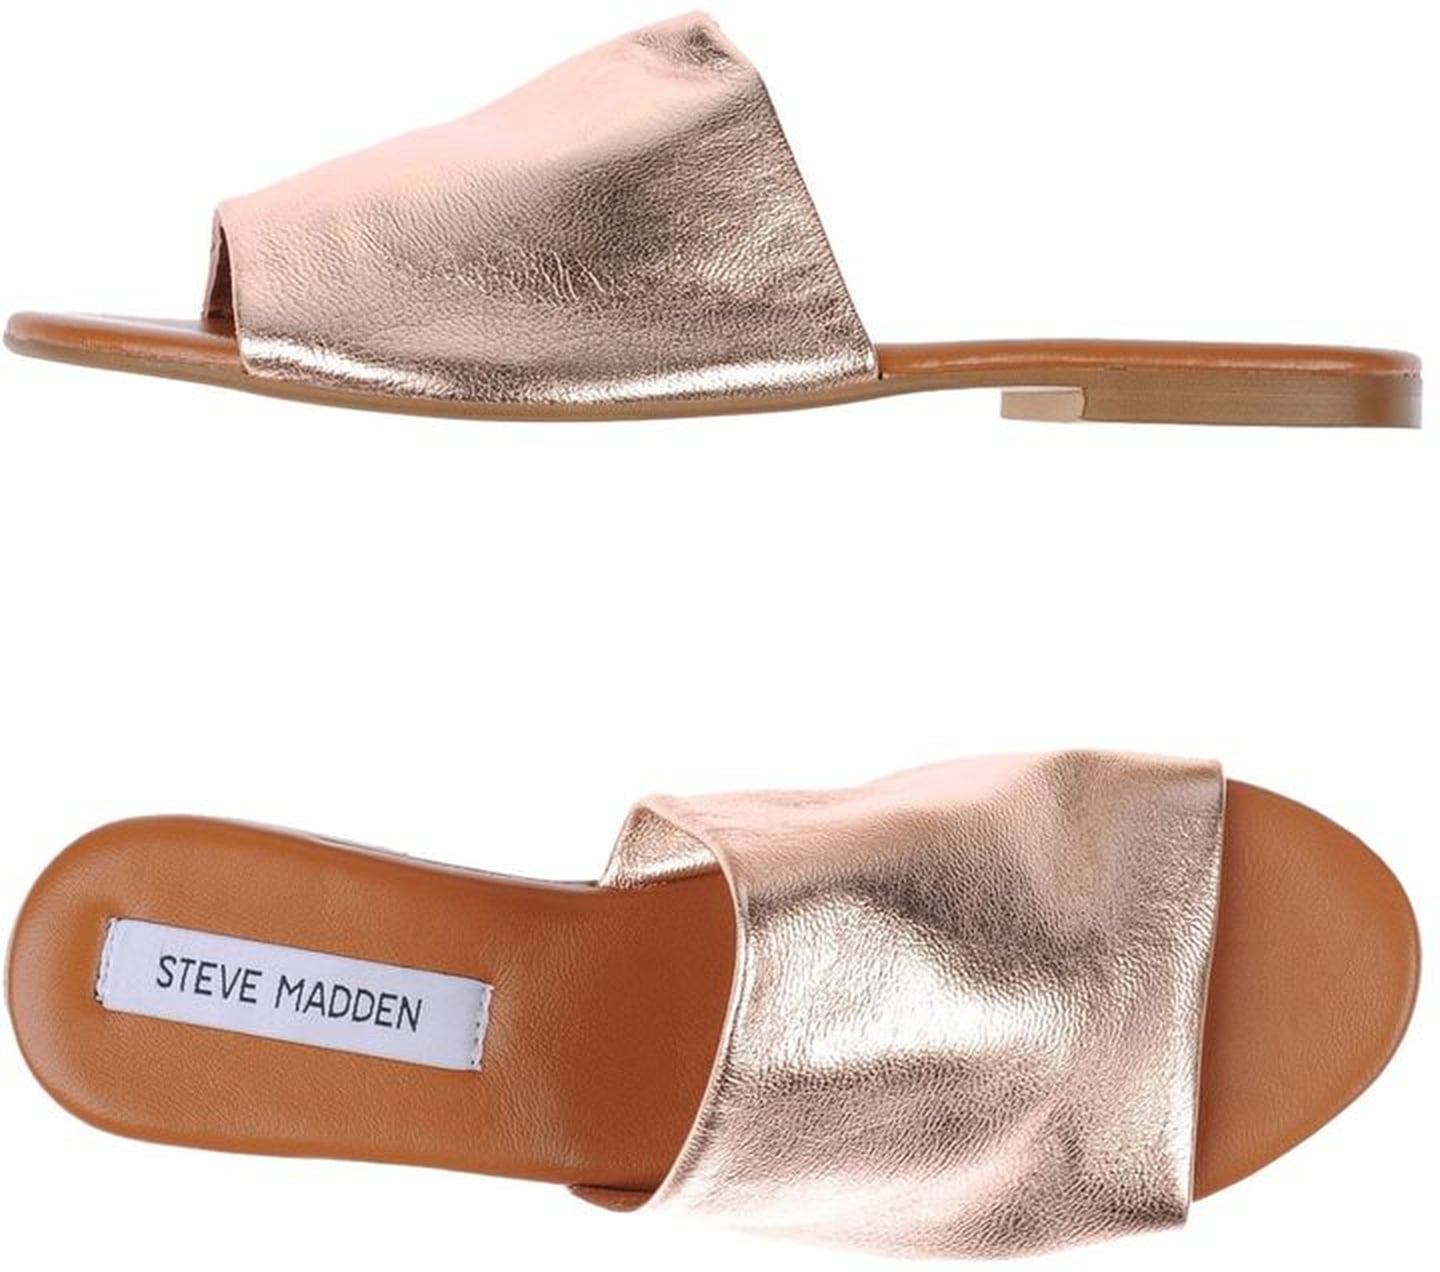 Where to Buy Copper Sandals | POPSUGAR Fashion